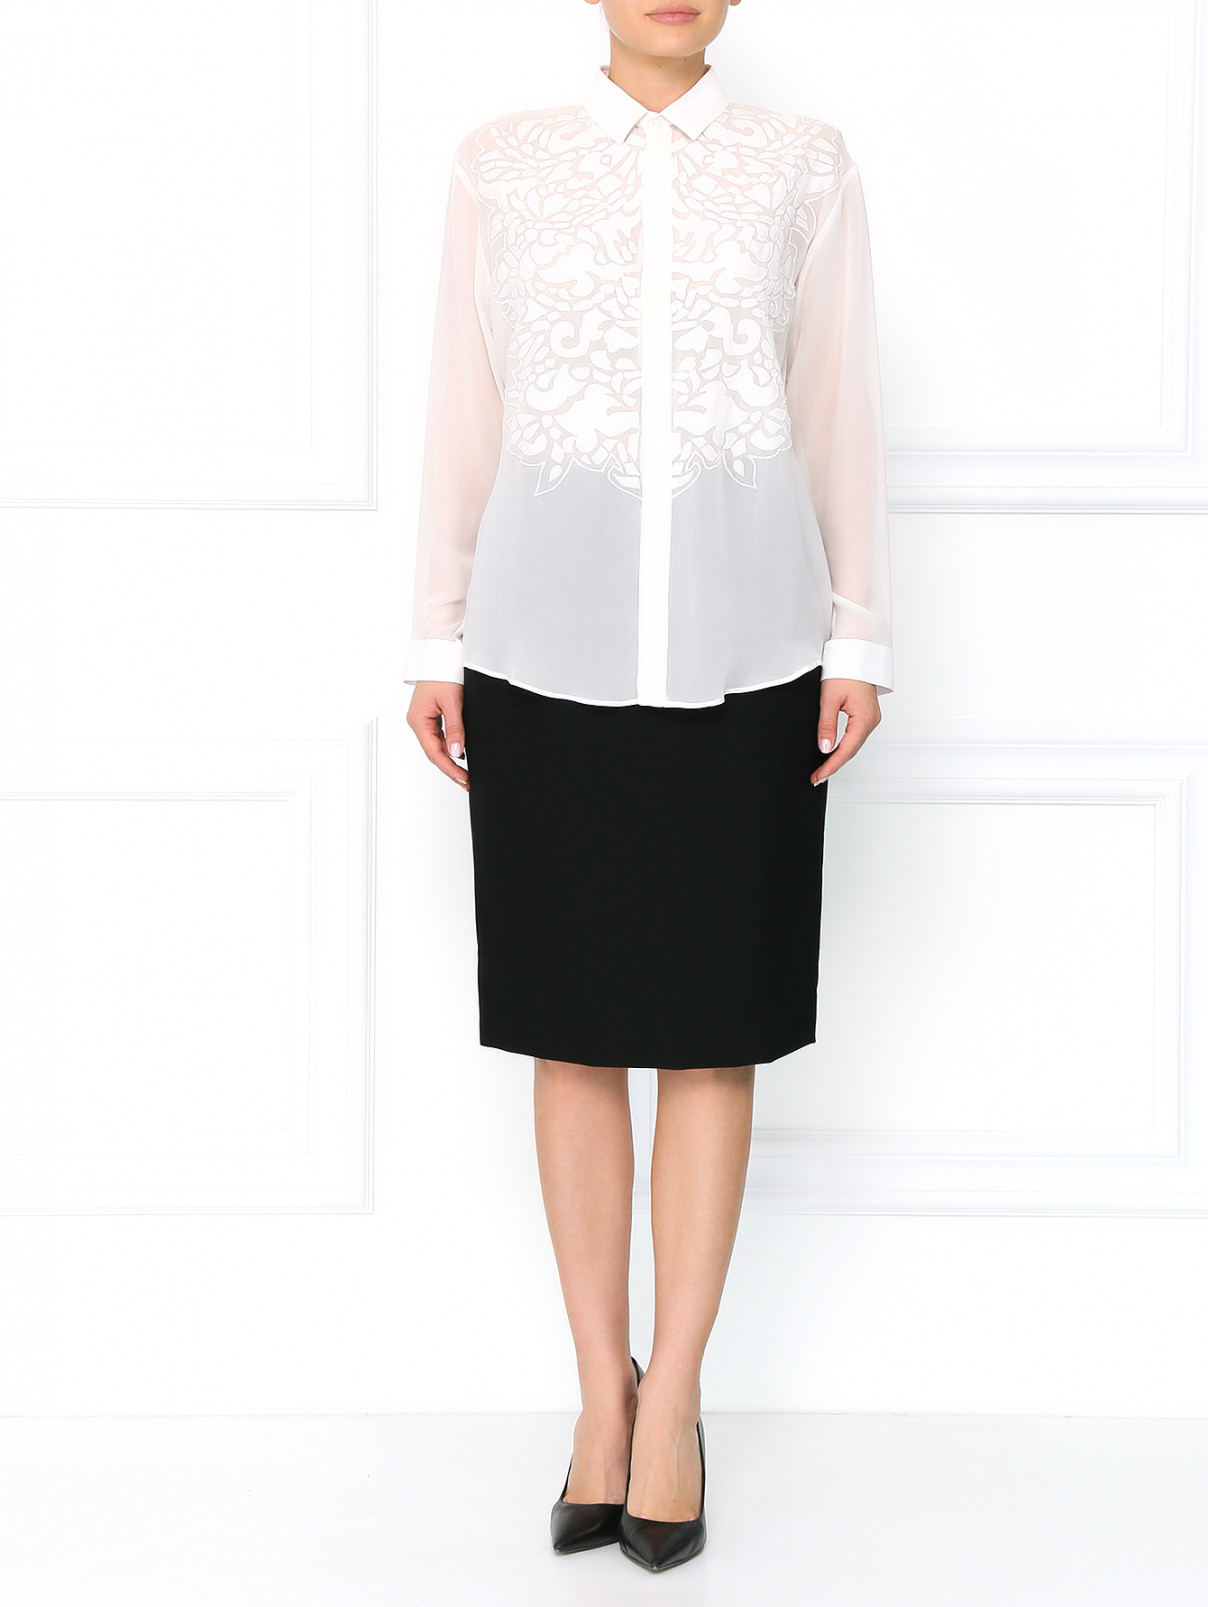 Блуза из шелка с аппликацией Barbara Bui  –  Модель Общий вид  – Цвет:  Белый